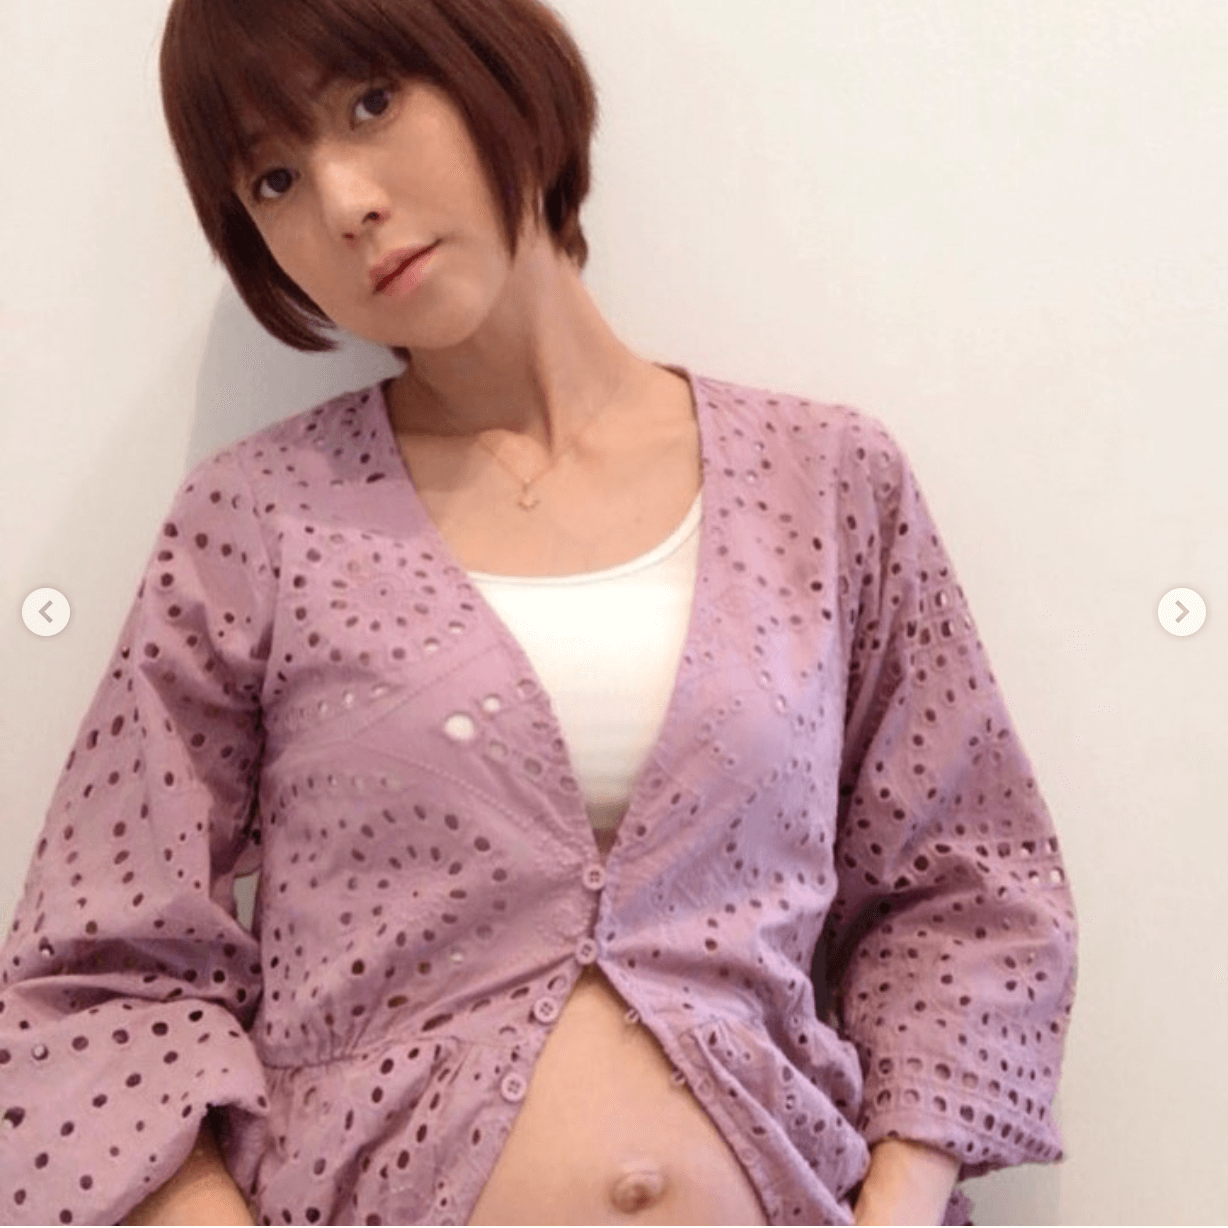 Hitomi 妊娠8か月のセルフマタニティフォト公開に キレイなお腹